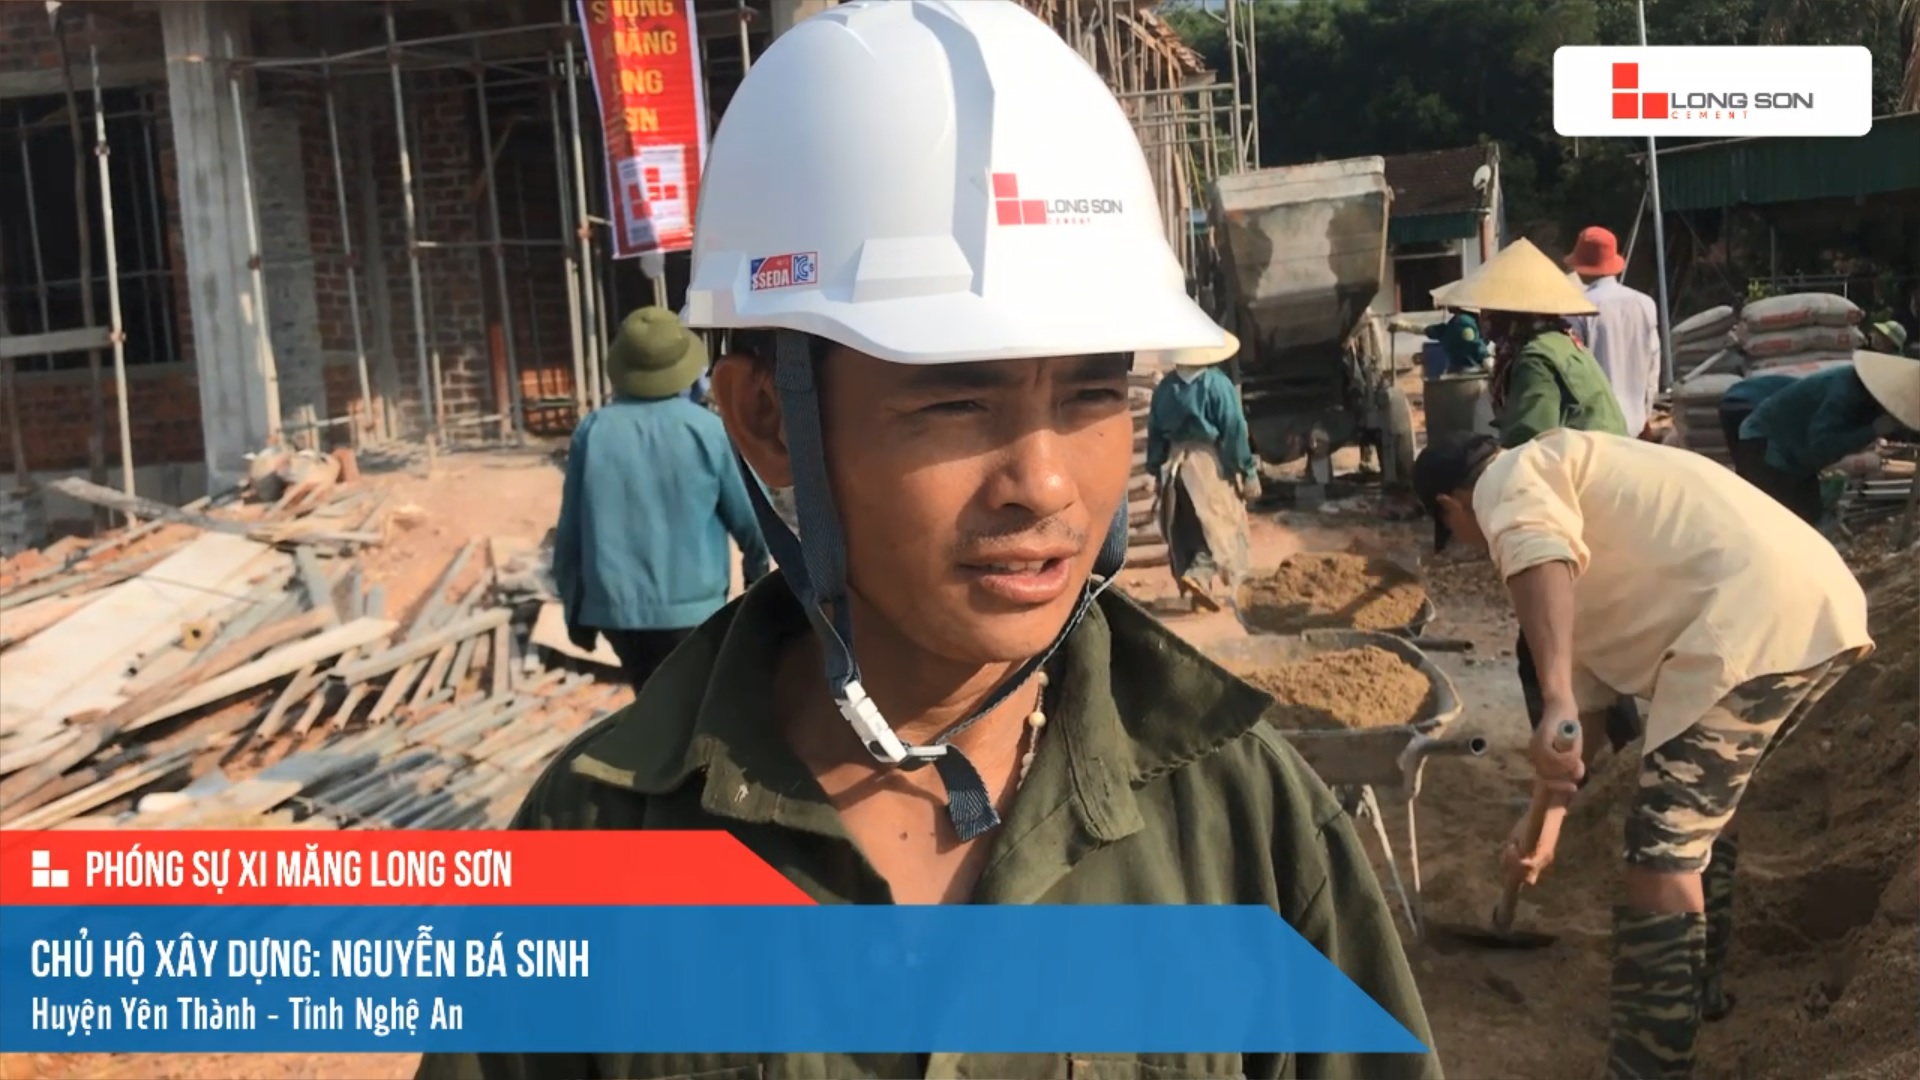 Phóng sự công trình sử dụng Xi măng Long Sơn tại Nghệ An 14.05.2021